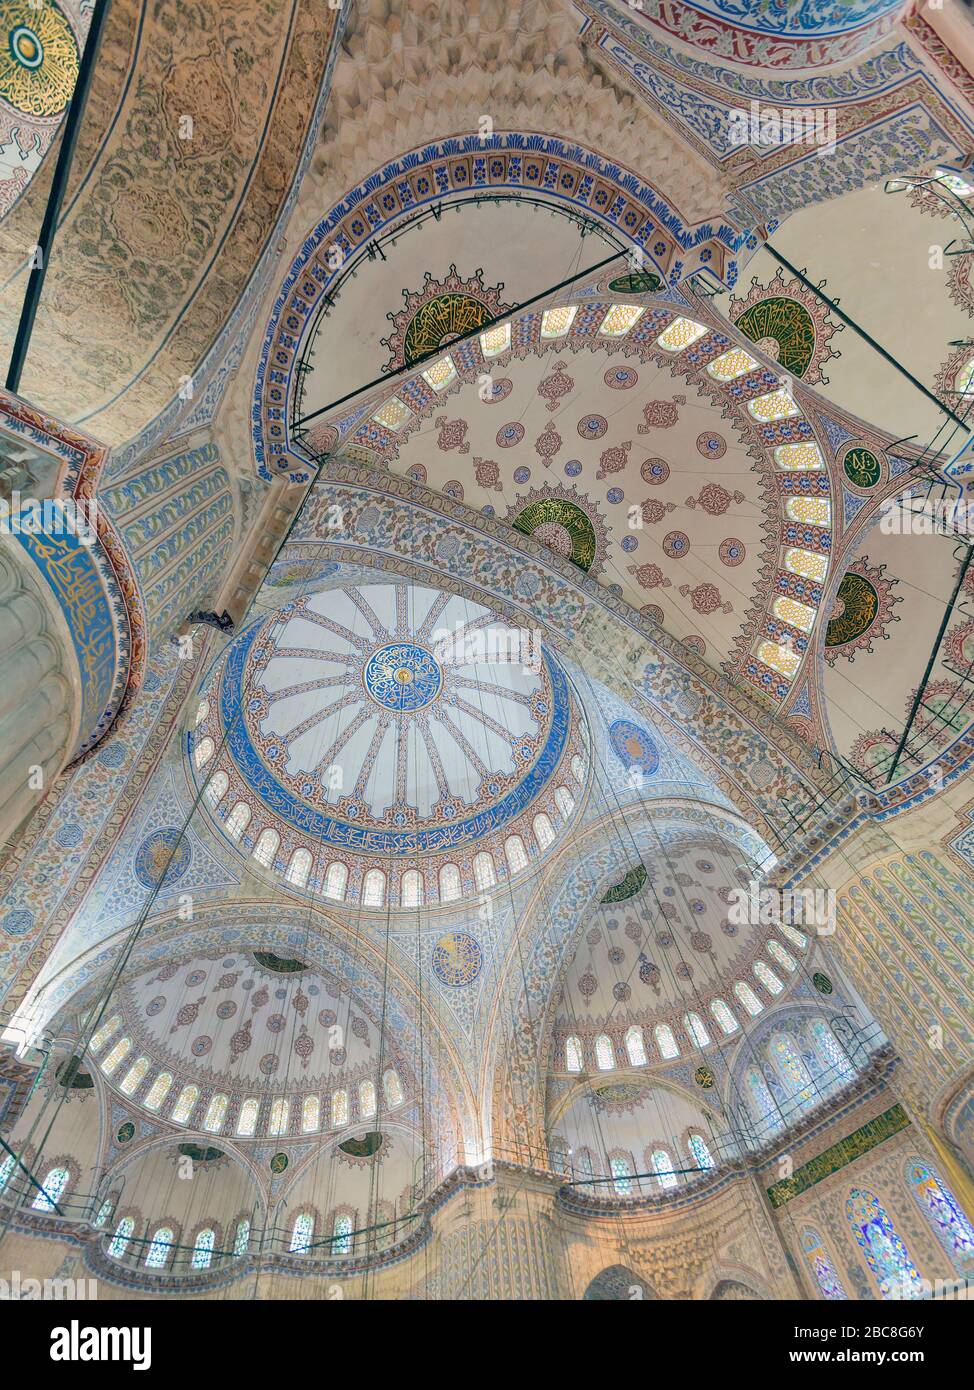 Istanbul, Province d'Istanbul, Turquie. Intérieur de la Mosquée Sultan Ahmet ou Sultanahmet, également connue sous le nom de Mosquée bleue. Plafonds et dômes montrant moi Banque D'Images